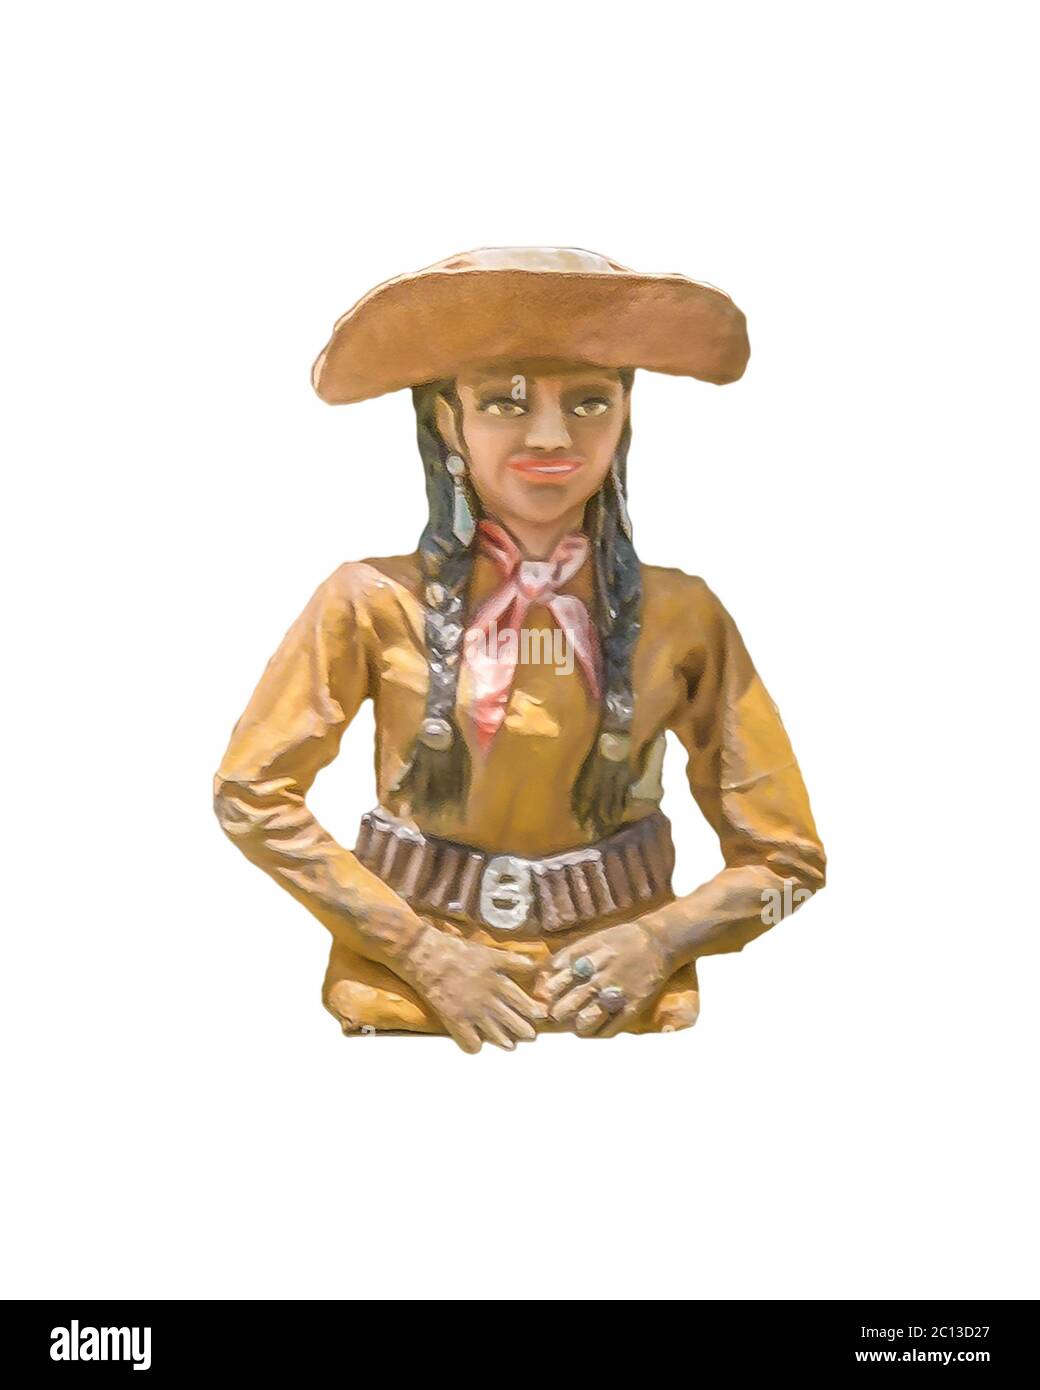 Bois Sculpture de femme avec vêtements Cowboy Banque D'Images